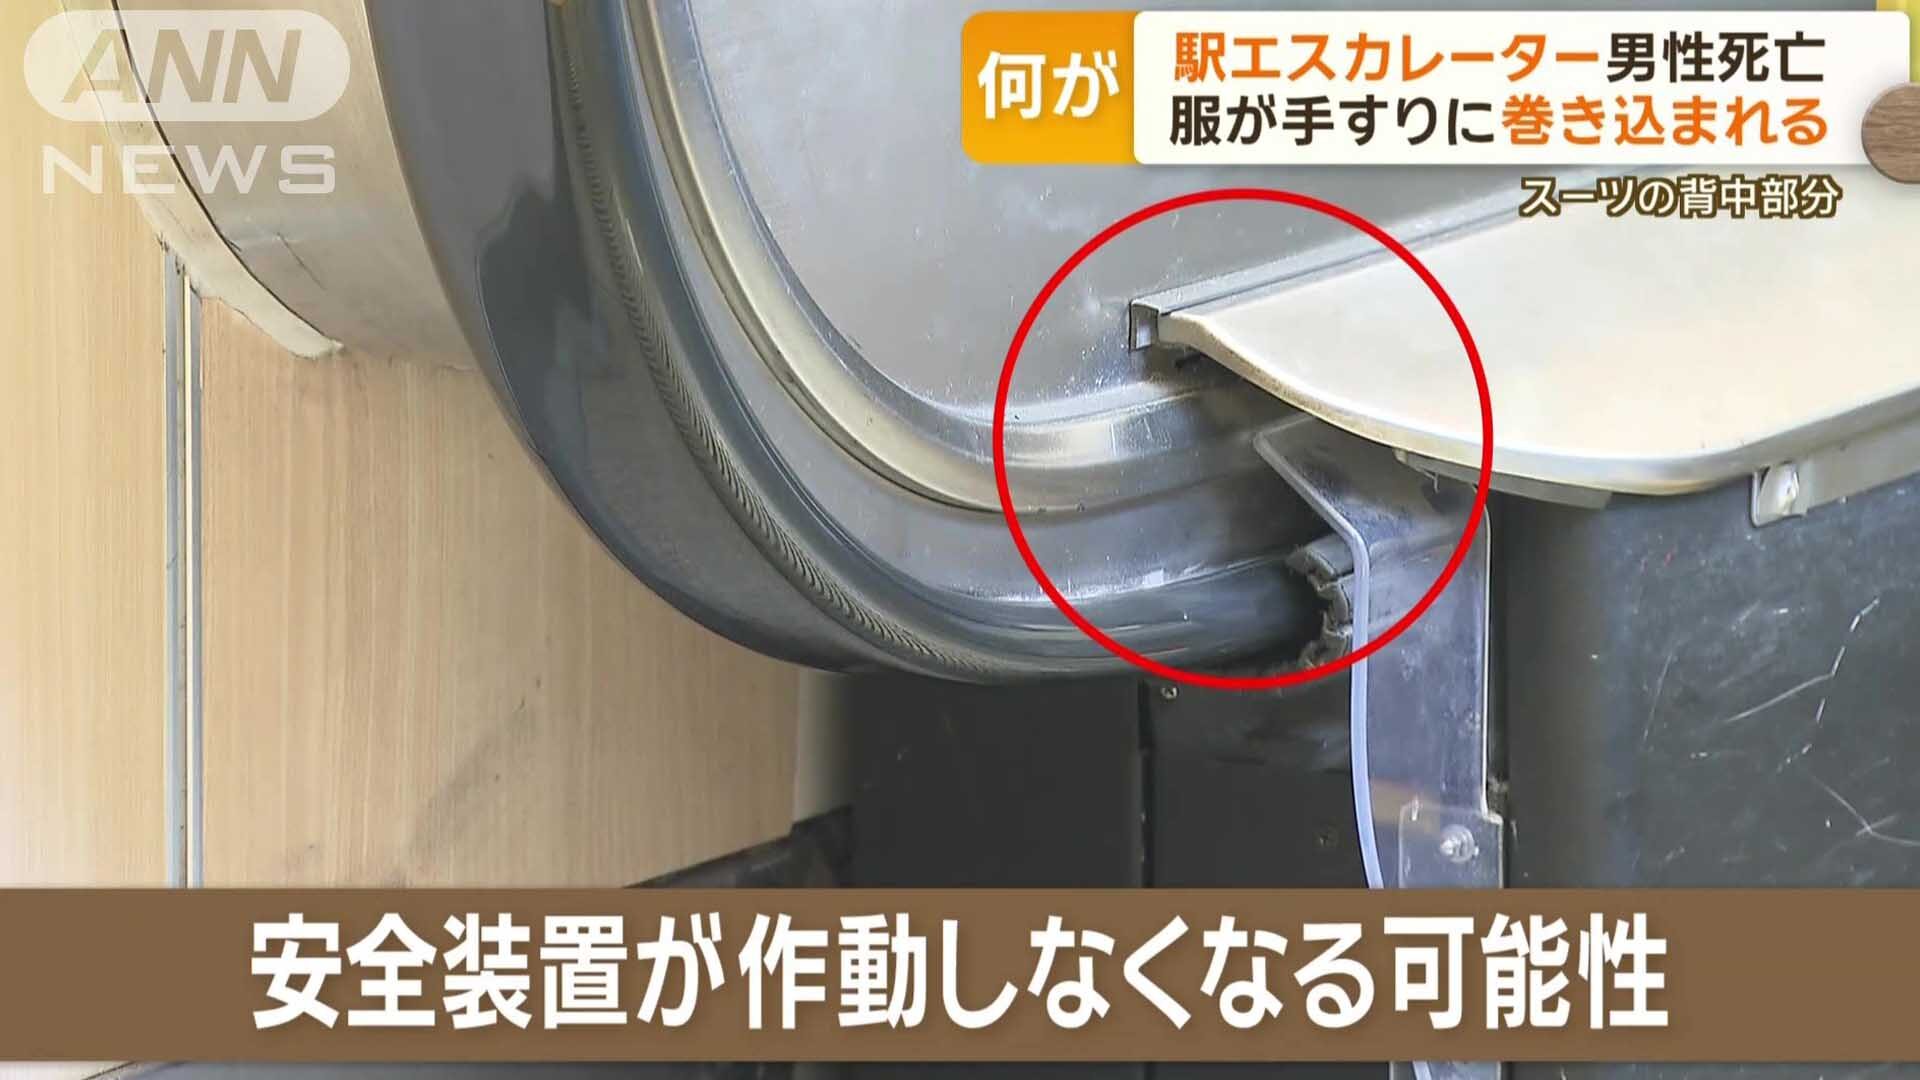 ชายชราญี่ปุ่นดับสลด! หลังถูก “บันไดเลื่อน” ที่สถานีรถไฟดูดเสื้อสูท-ติดแหง็กคาราว